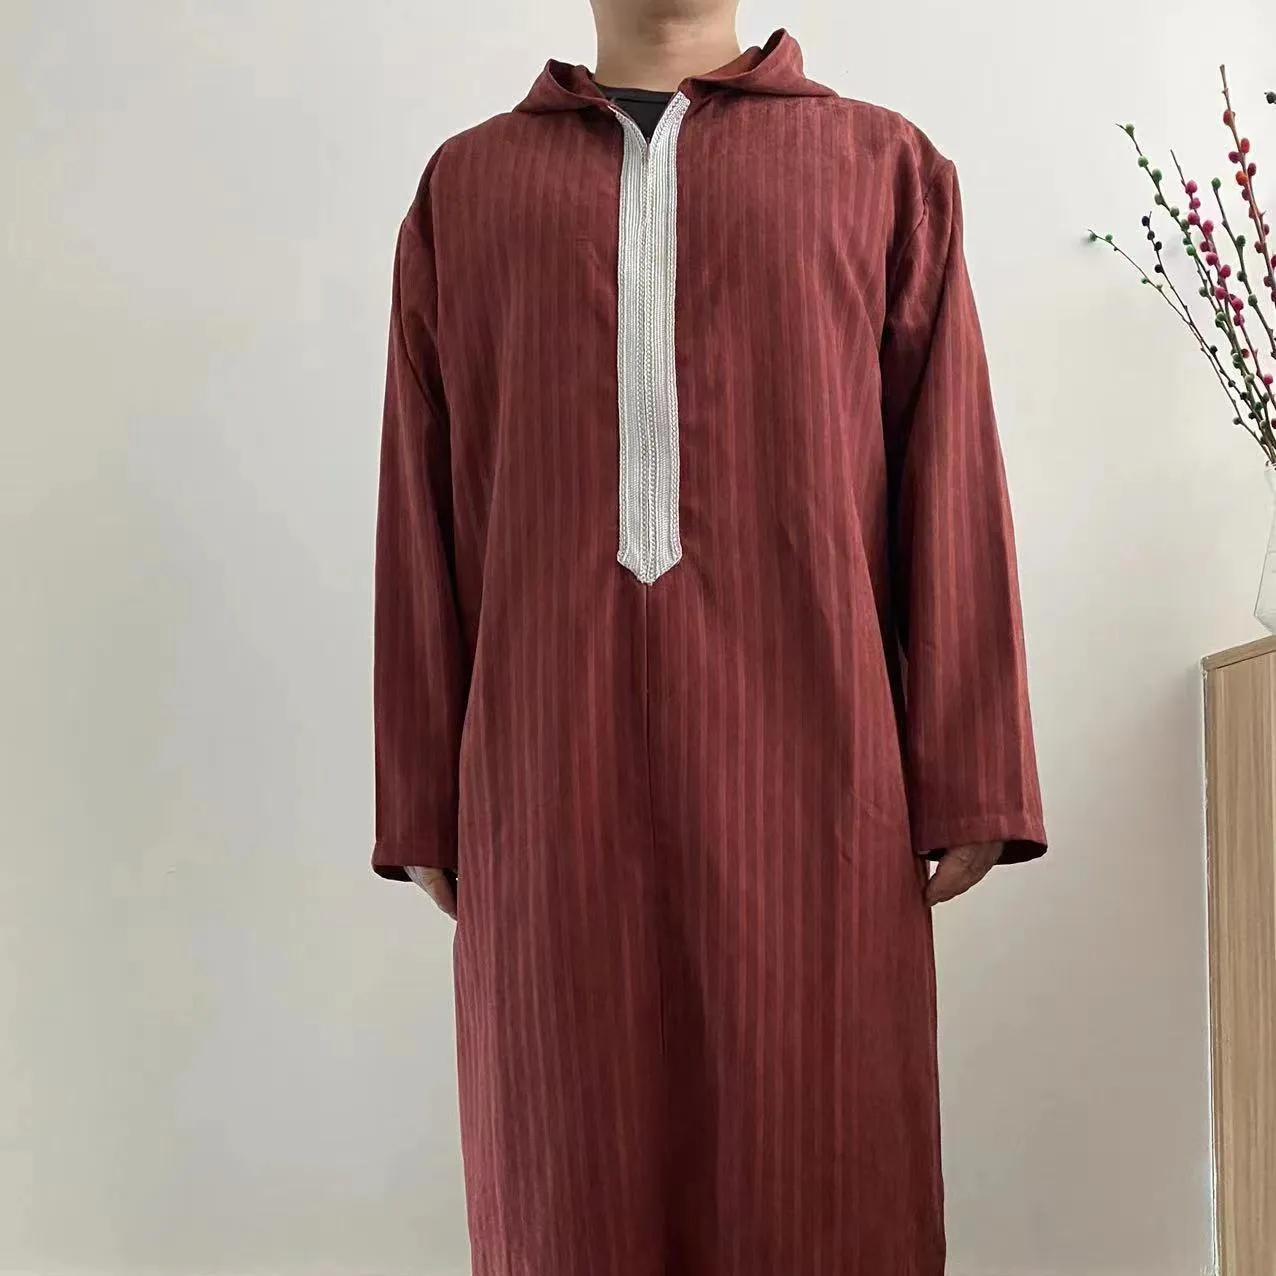 R-1伝統的なイスラム教徒の服イスラムアバヤドバイローブイスラム人アラビアサウジモロッコカフタントベ男性用